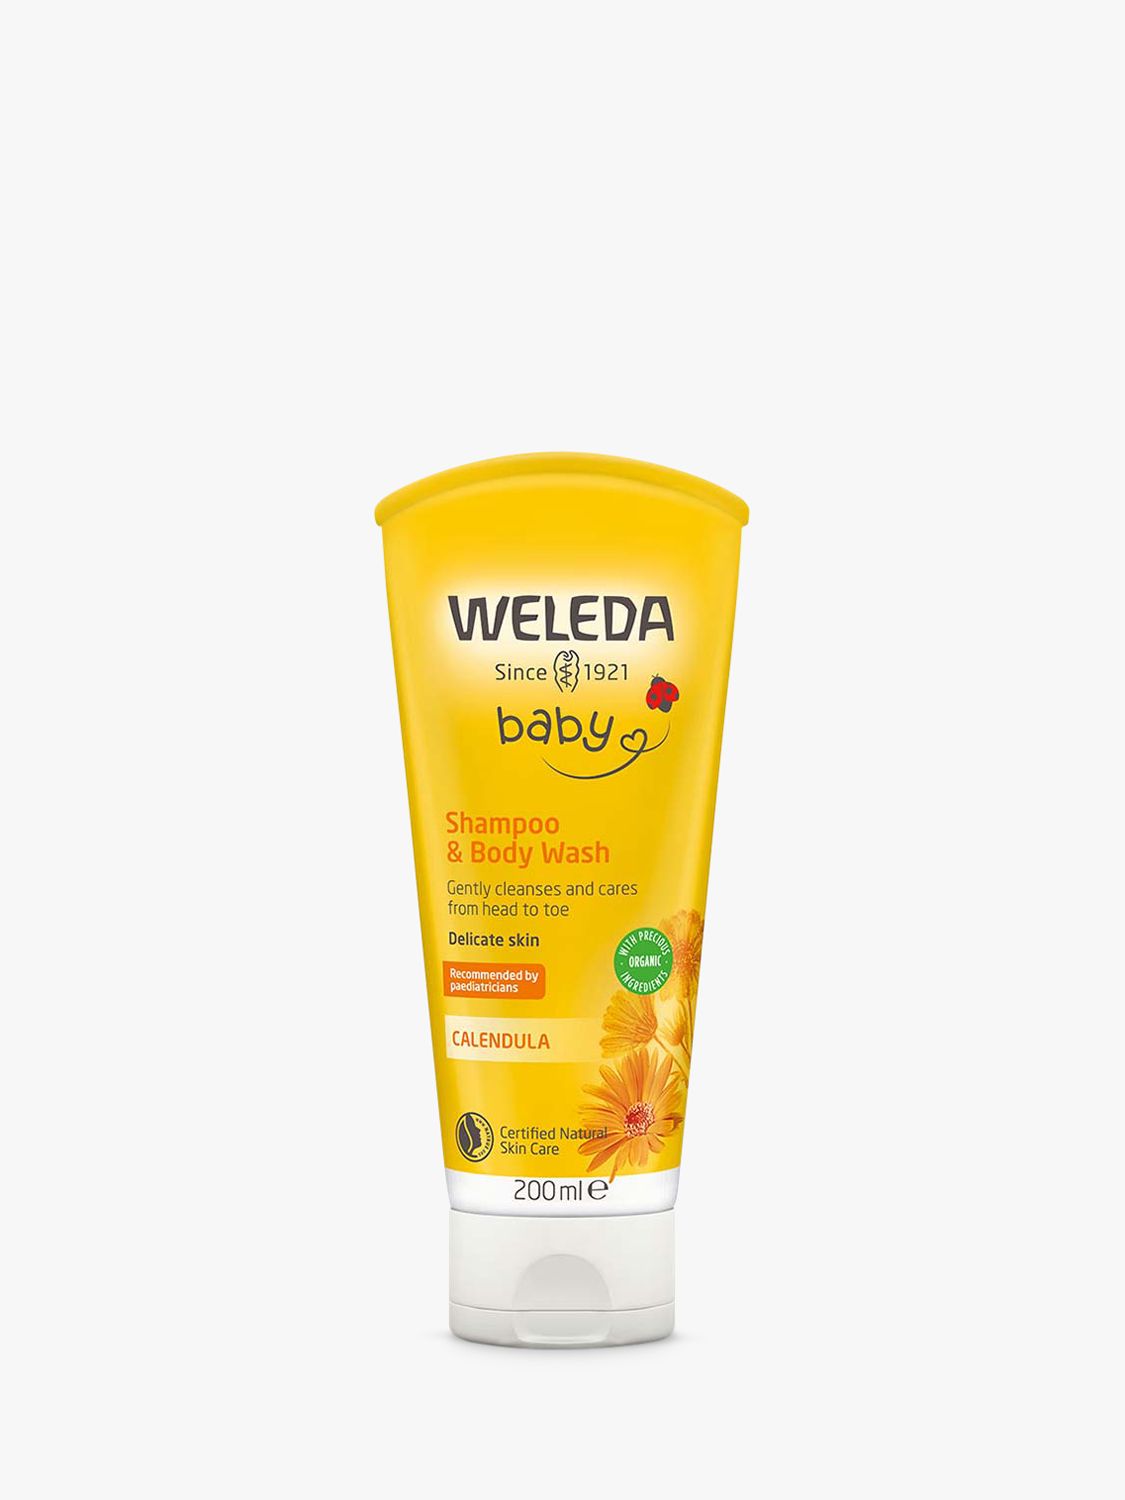 Weleda Baby Calendula Baby Cream Tb 75 ml